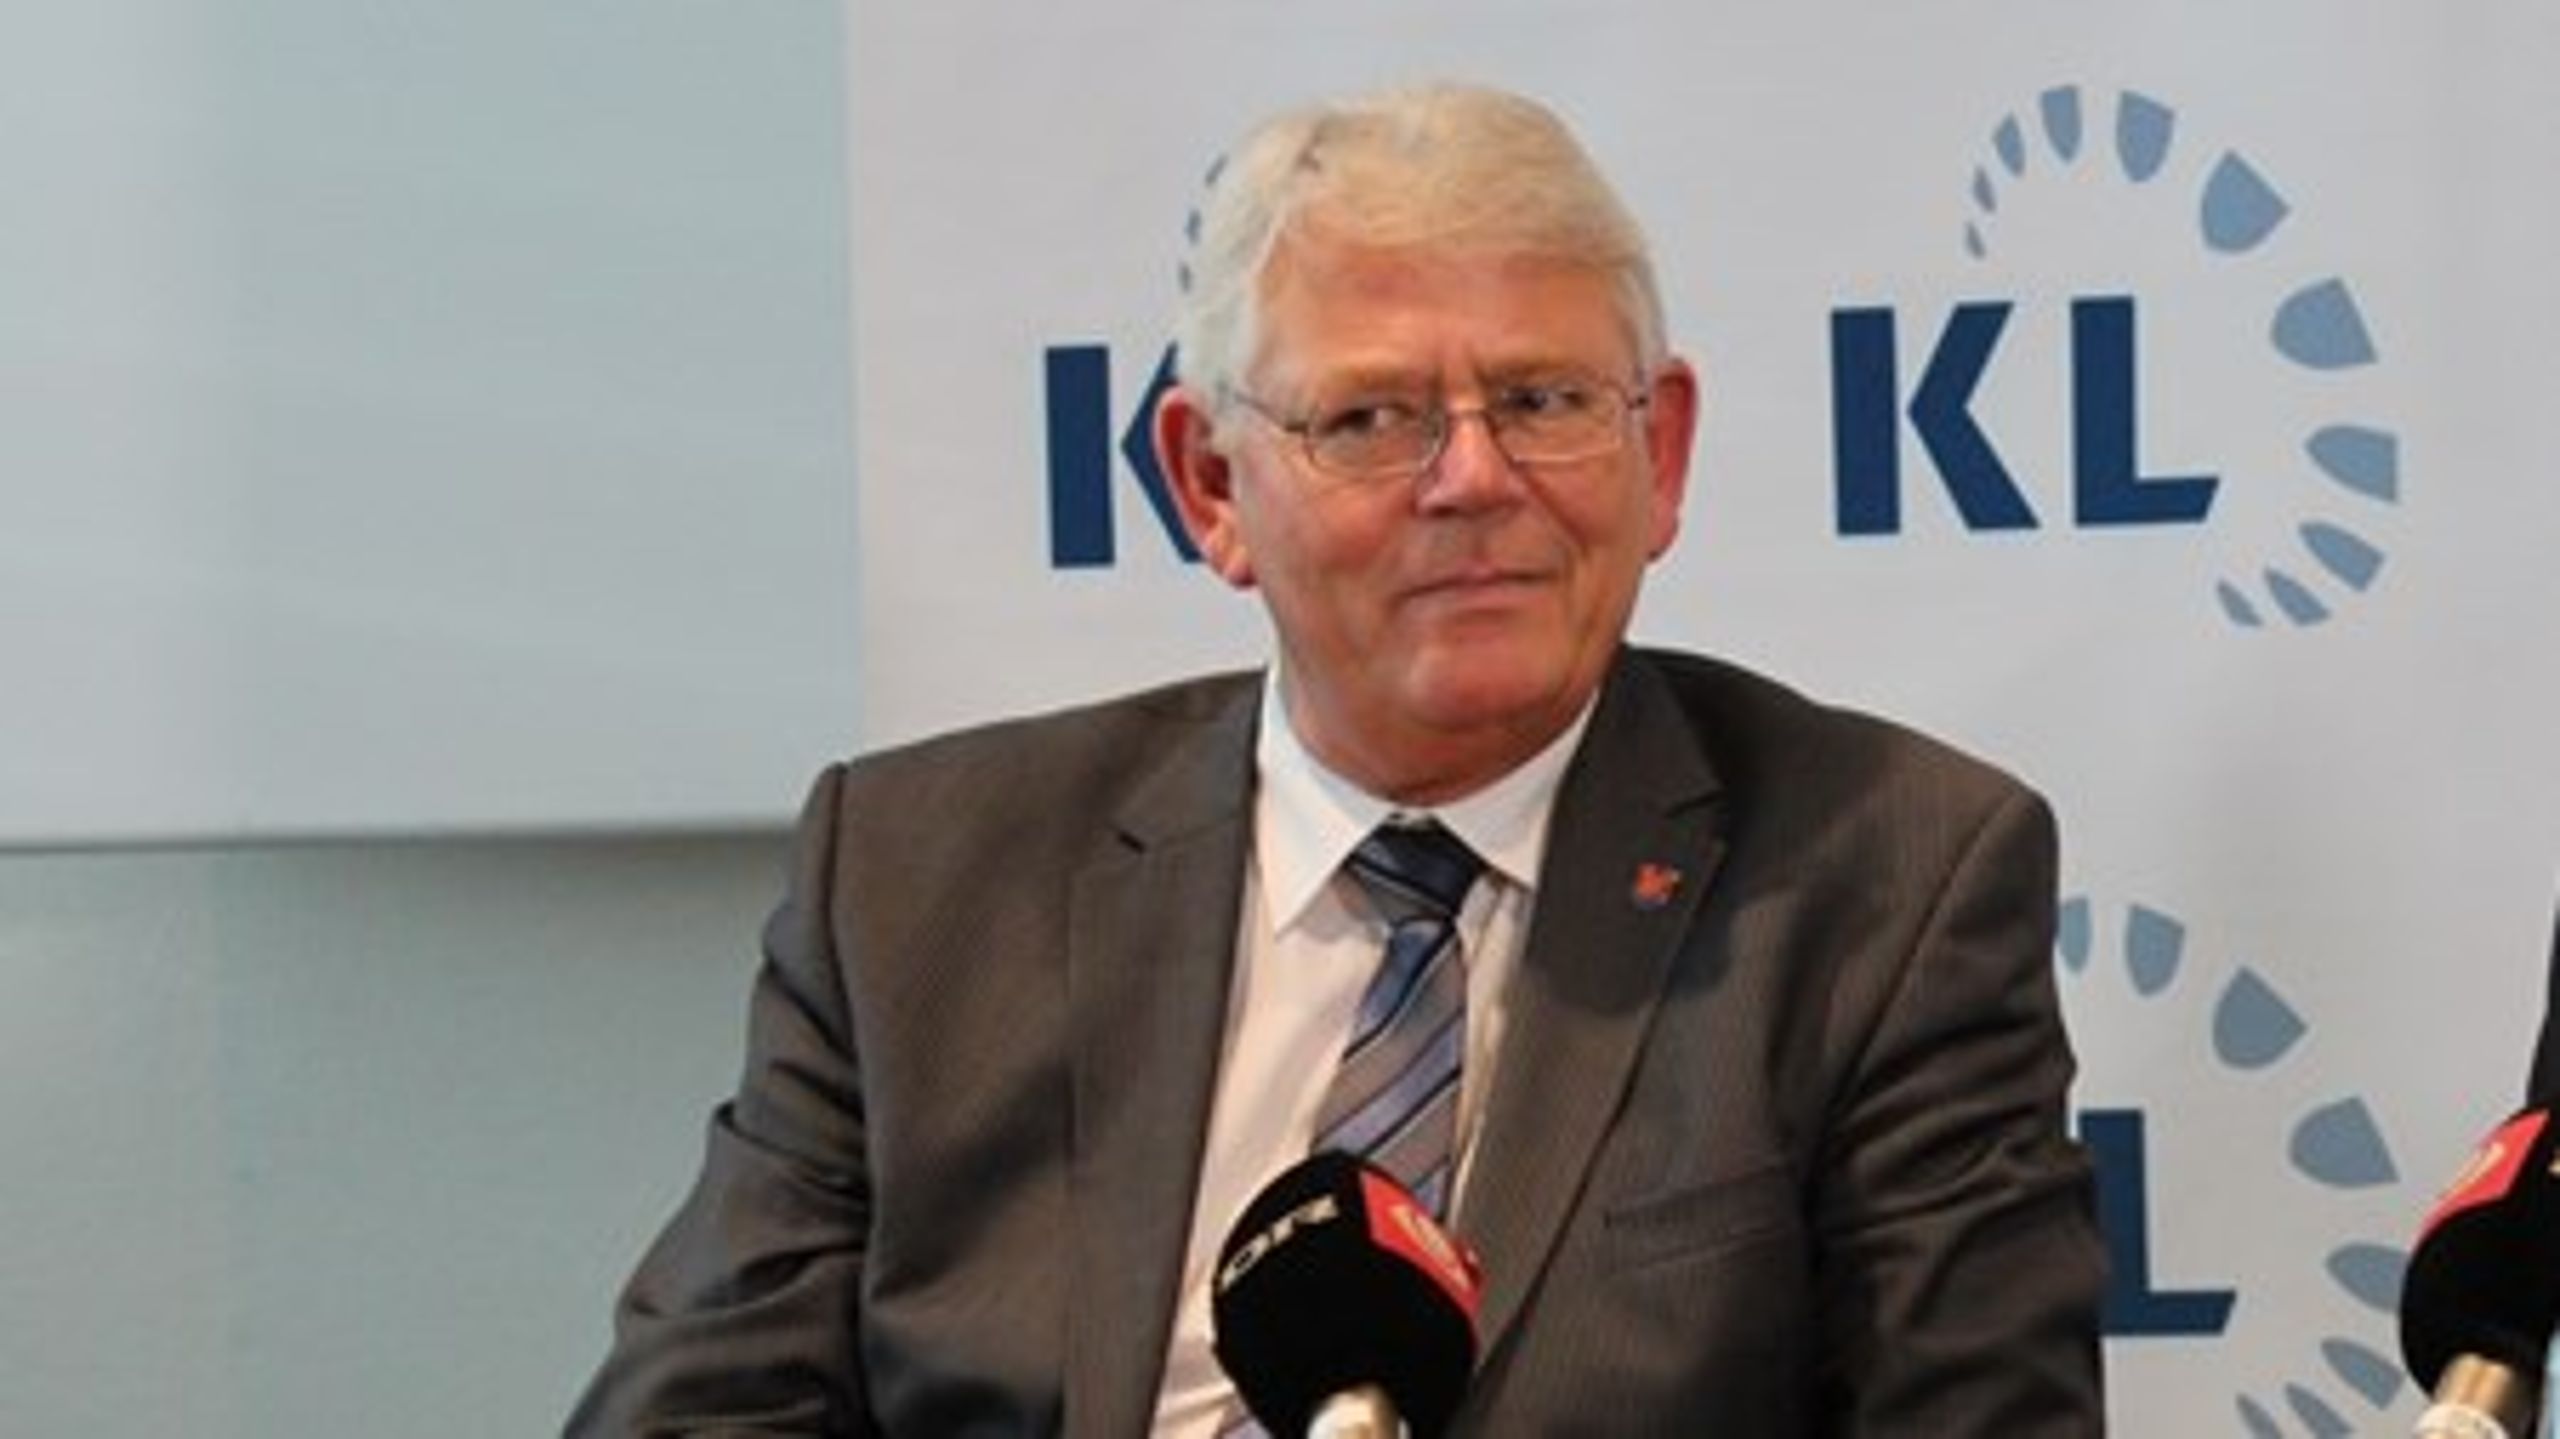 Rødovres borgmester&nbsp;Erik Nielsen stopper som næstformand i KL.&nbsp;